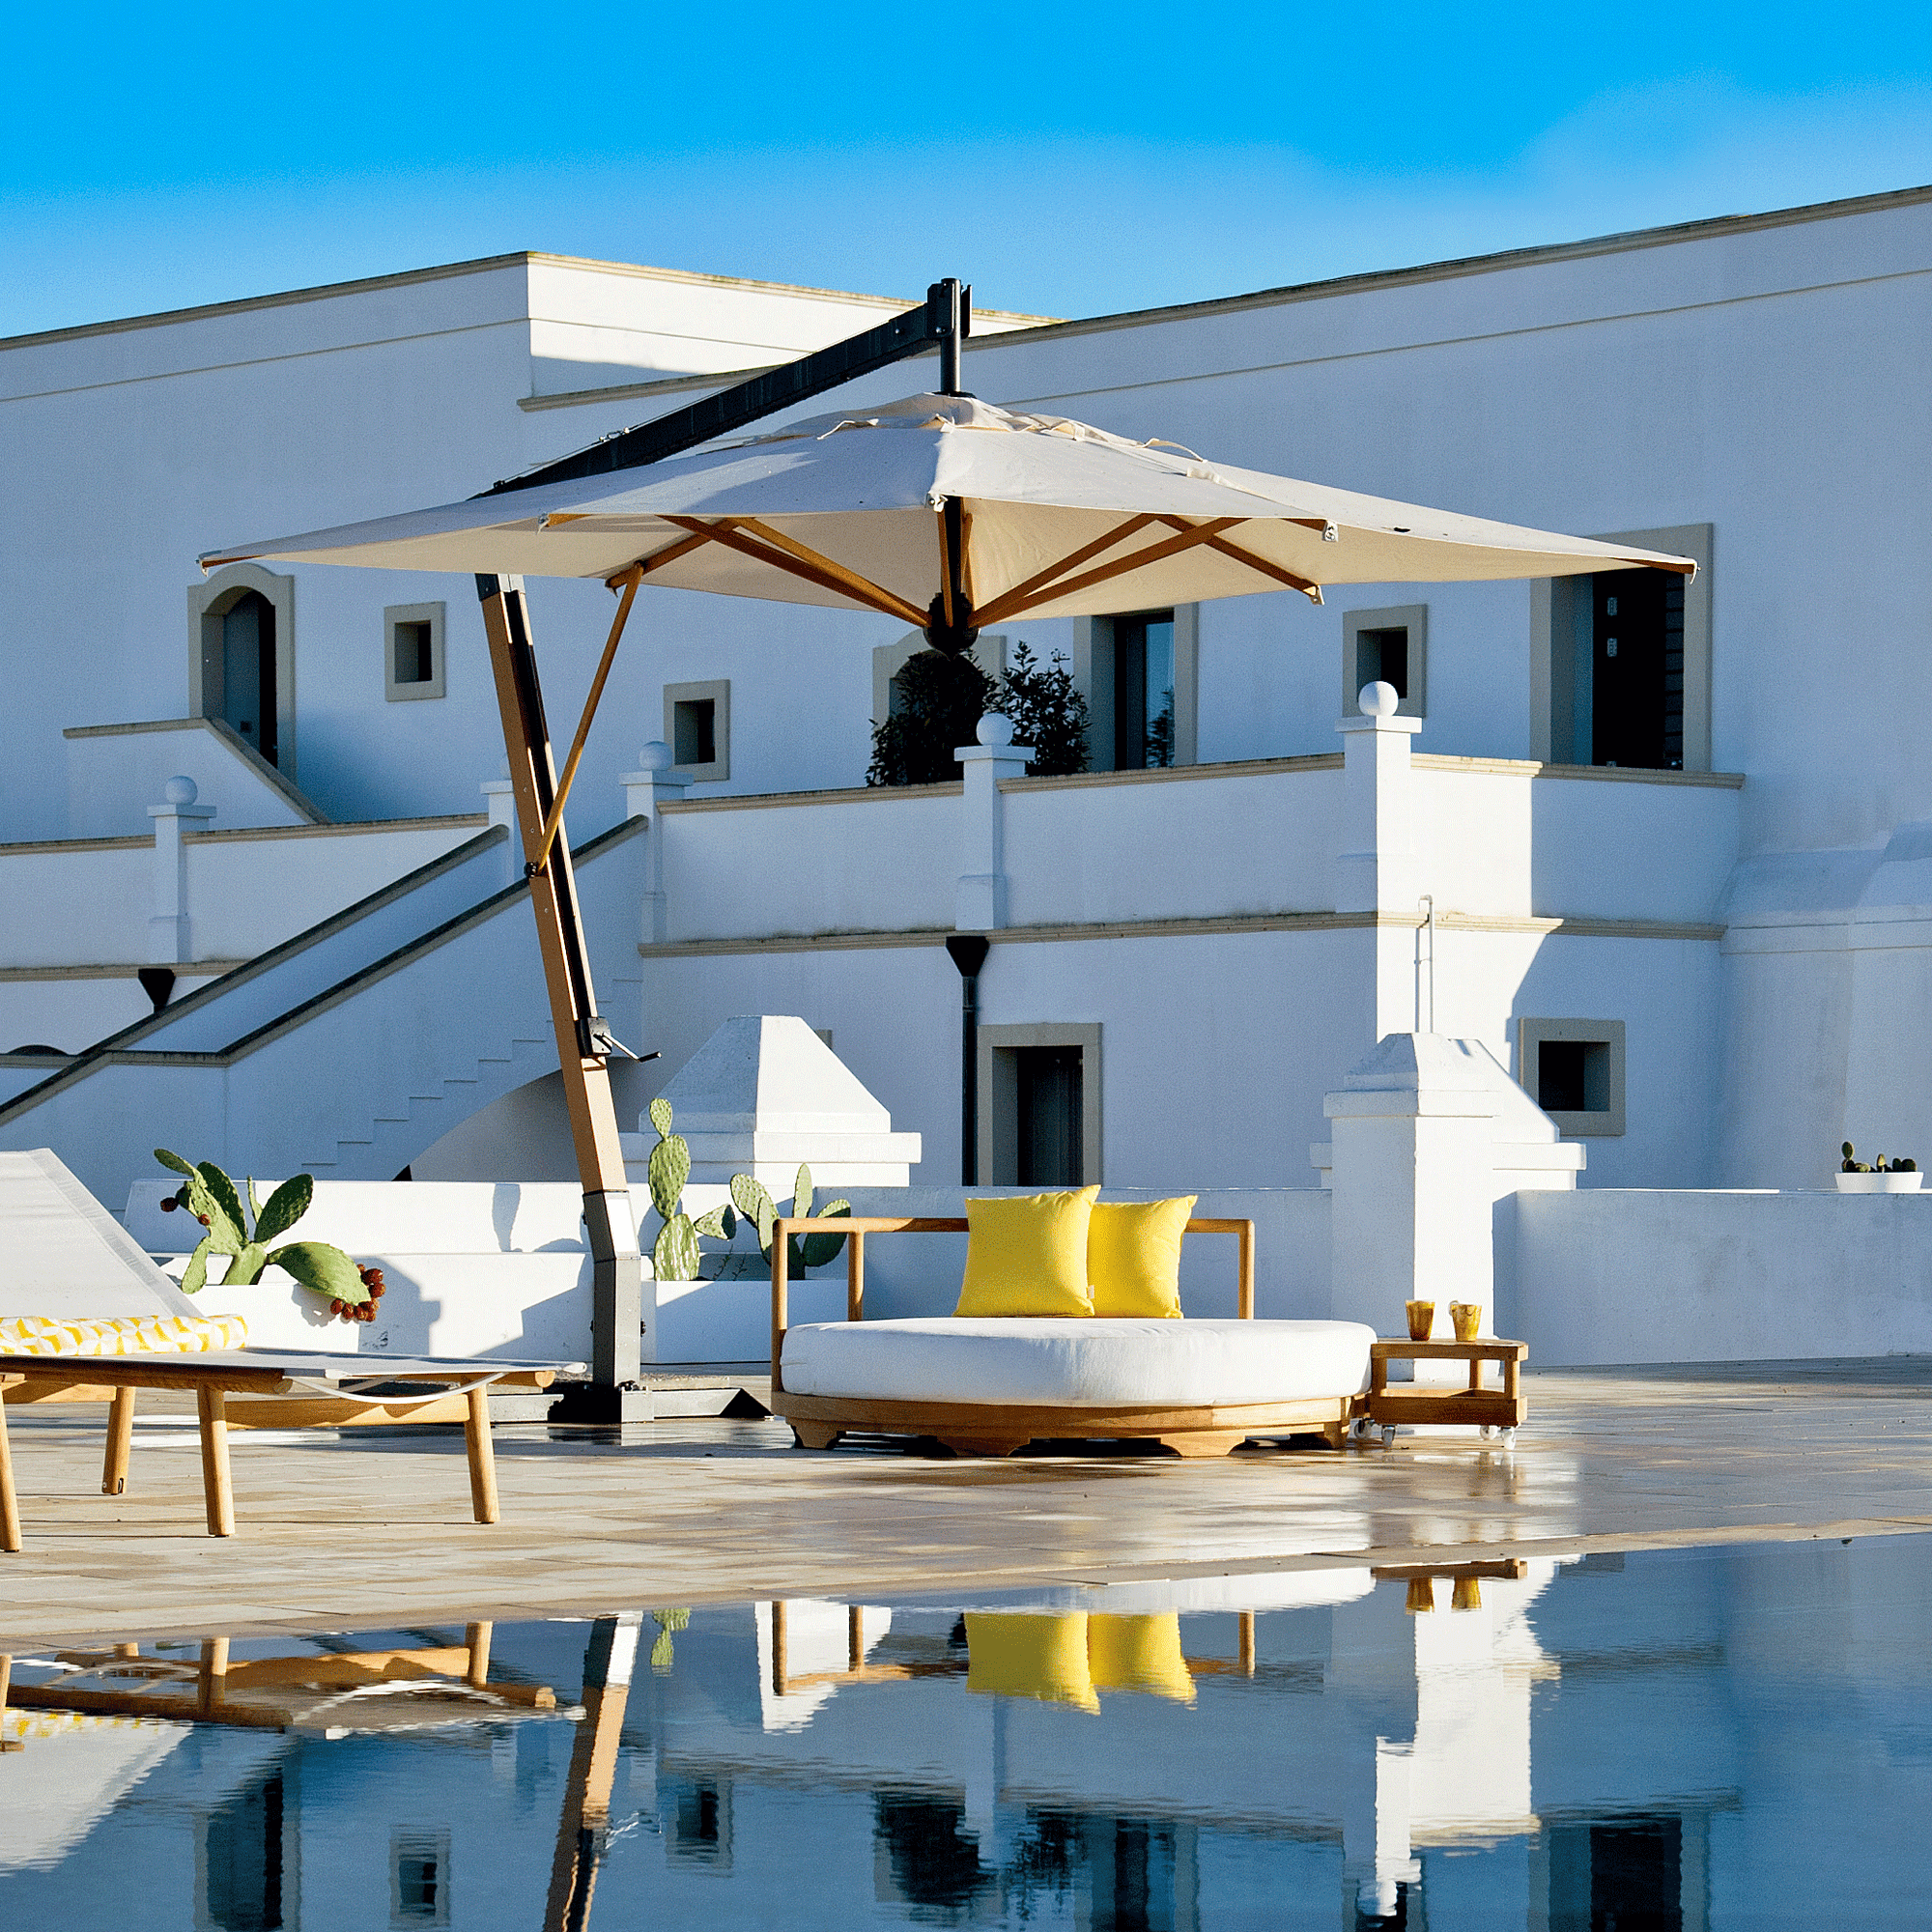 Unopiu Daybed dekoriert mit 2 gelben Kissen in der Größe von 40x40cm. Die Insel steht an einem Pool vor einer alten weißen italienischen Villa.